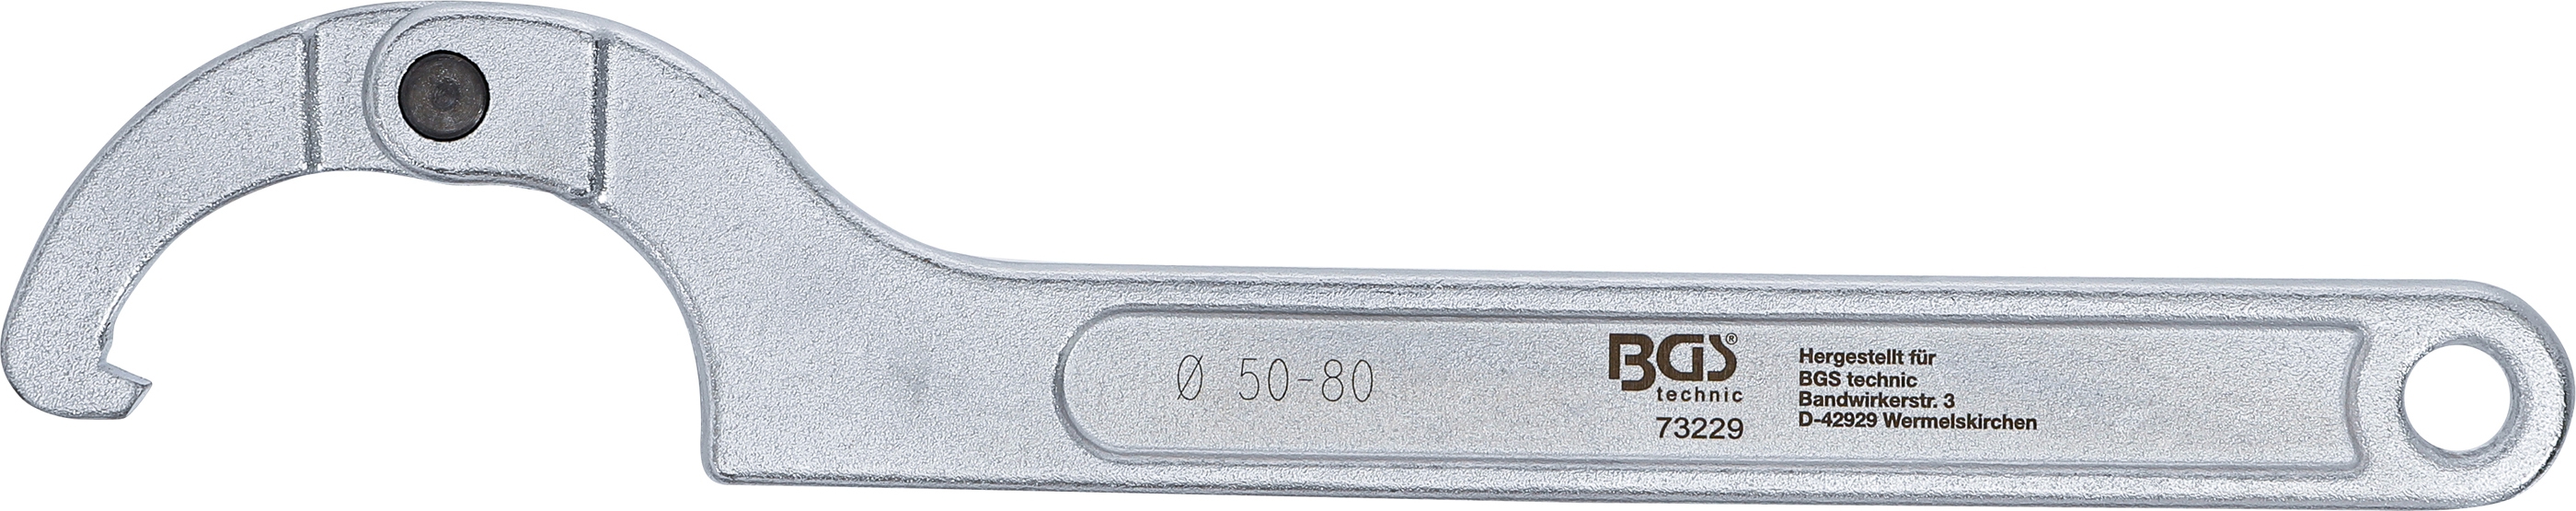 Gelenk-Hakenschlüssel mit Nase | 50 - 80 mm